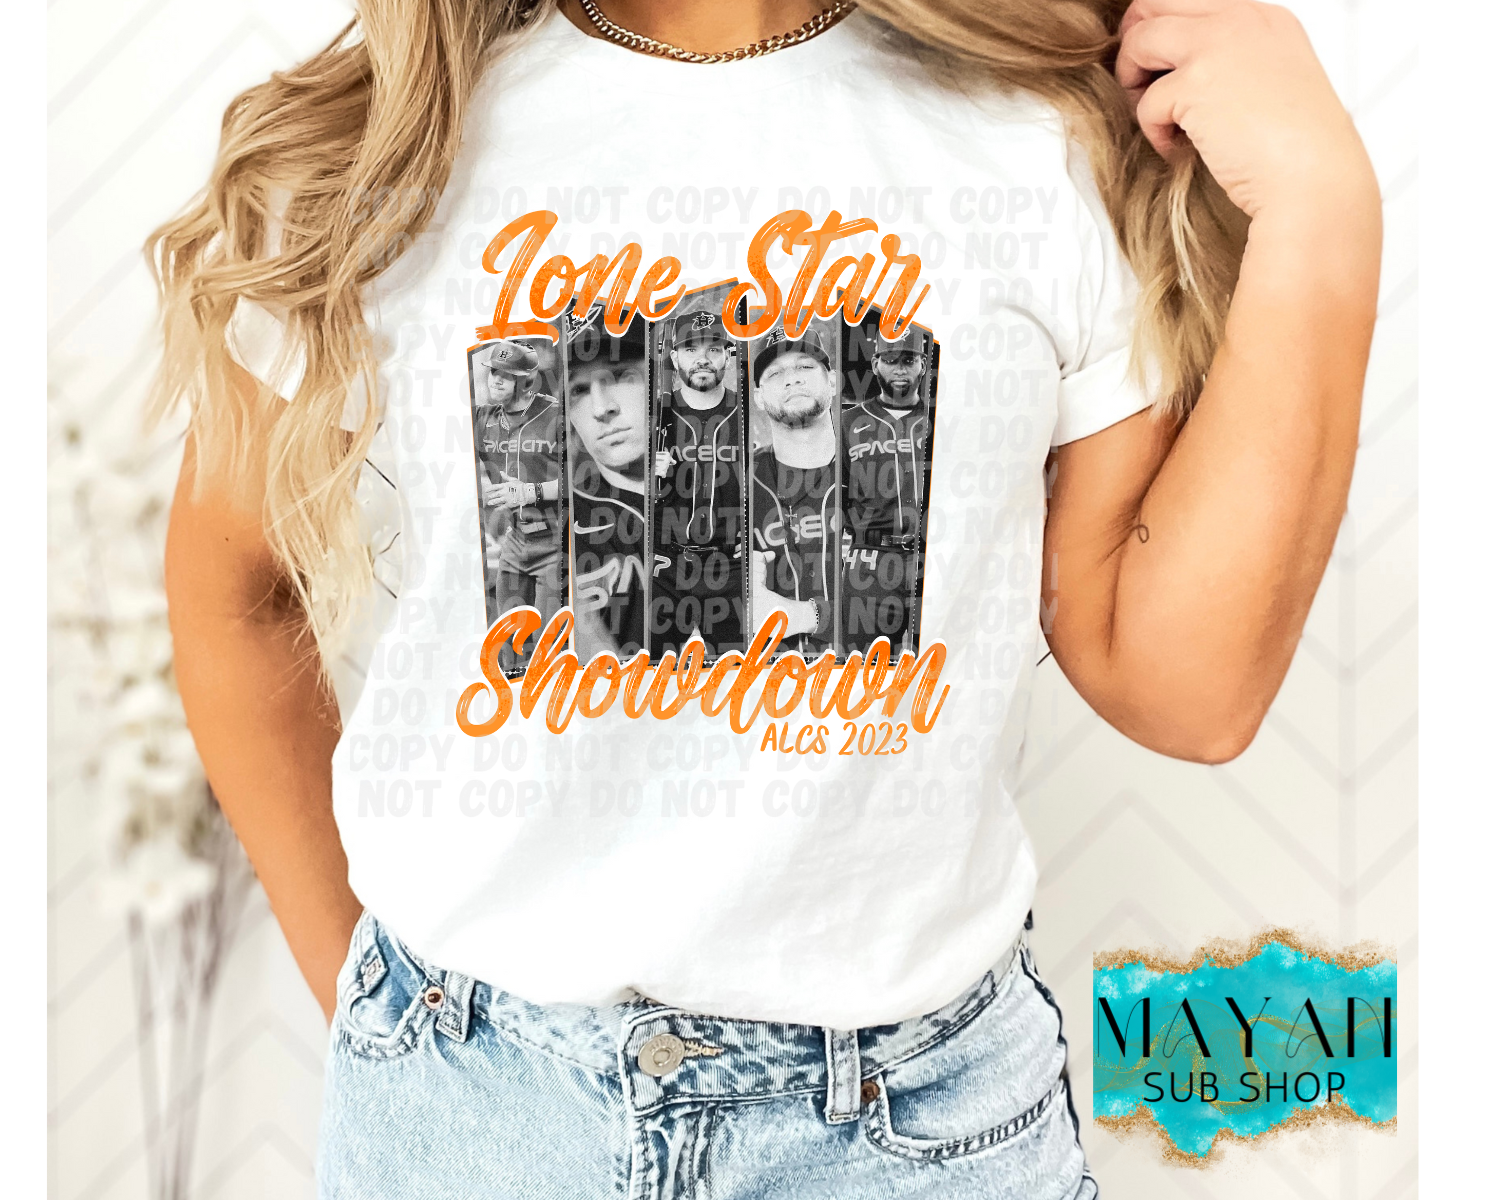 Lone star showdown shirt. -Mayan Sub Shop